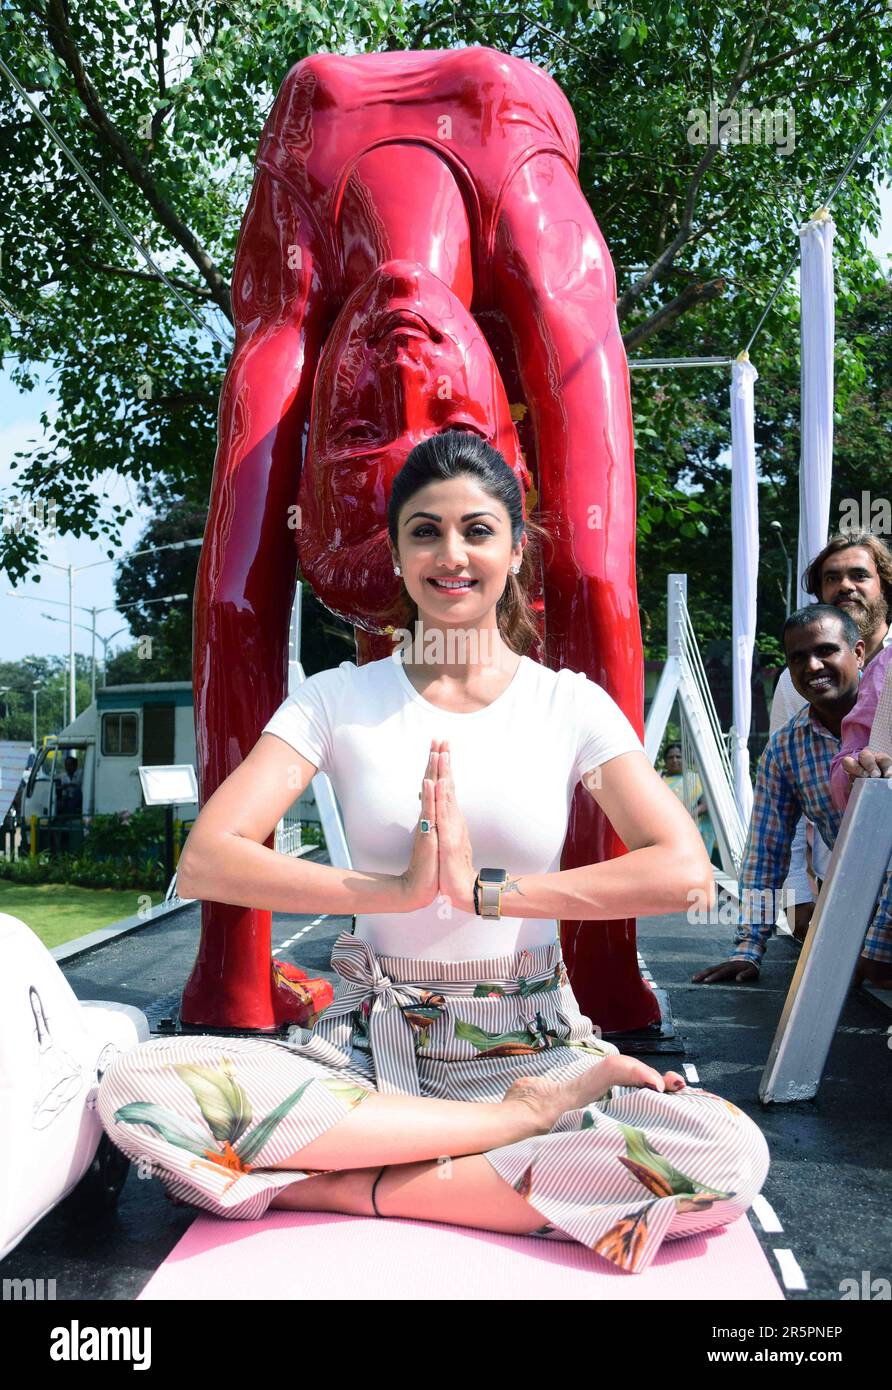 Shilpa Shetty, Shilpa Shetty Kundra, actrice indienne, lancement de la statue de yoga, Mumbai, Inde, 17 mai 2017 Banque D'Images